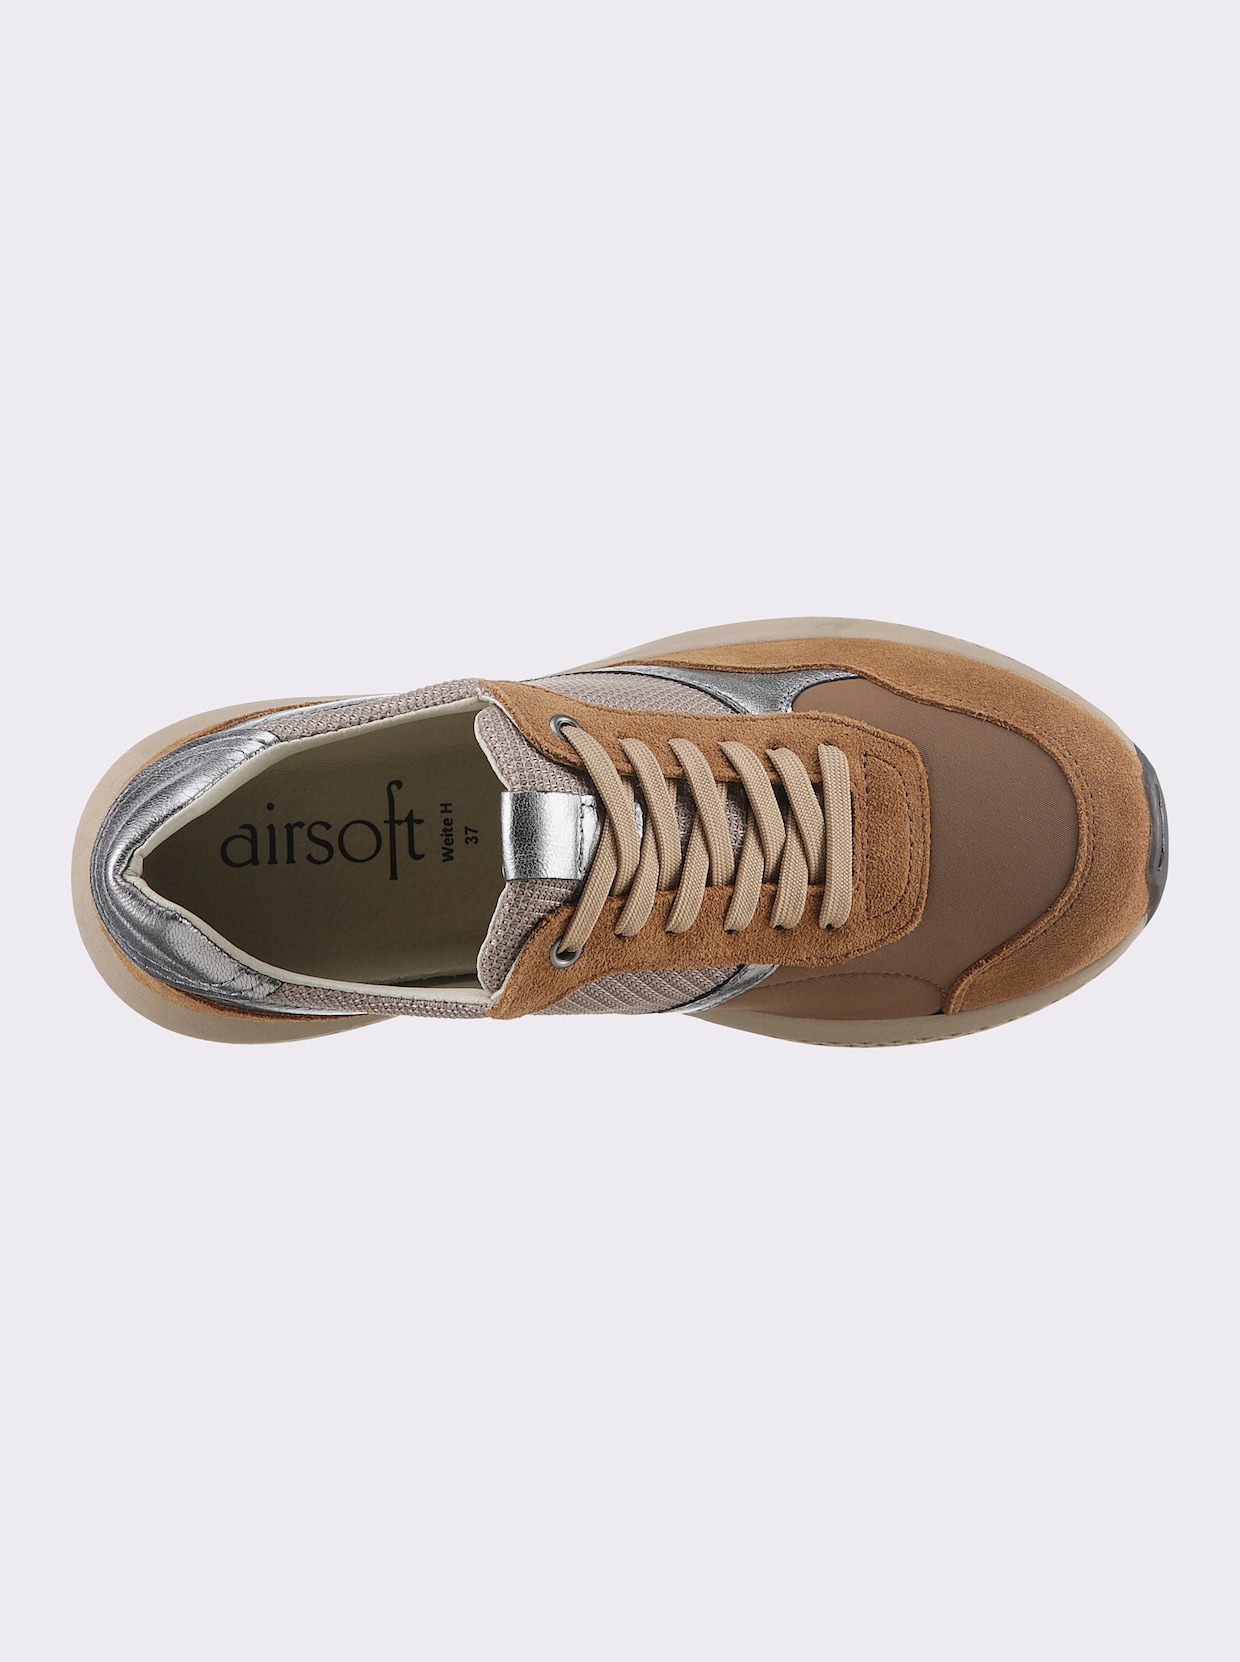 airsoft modern+ Sneaker - cognac